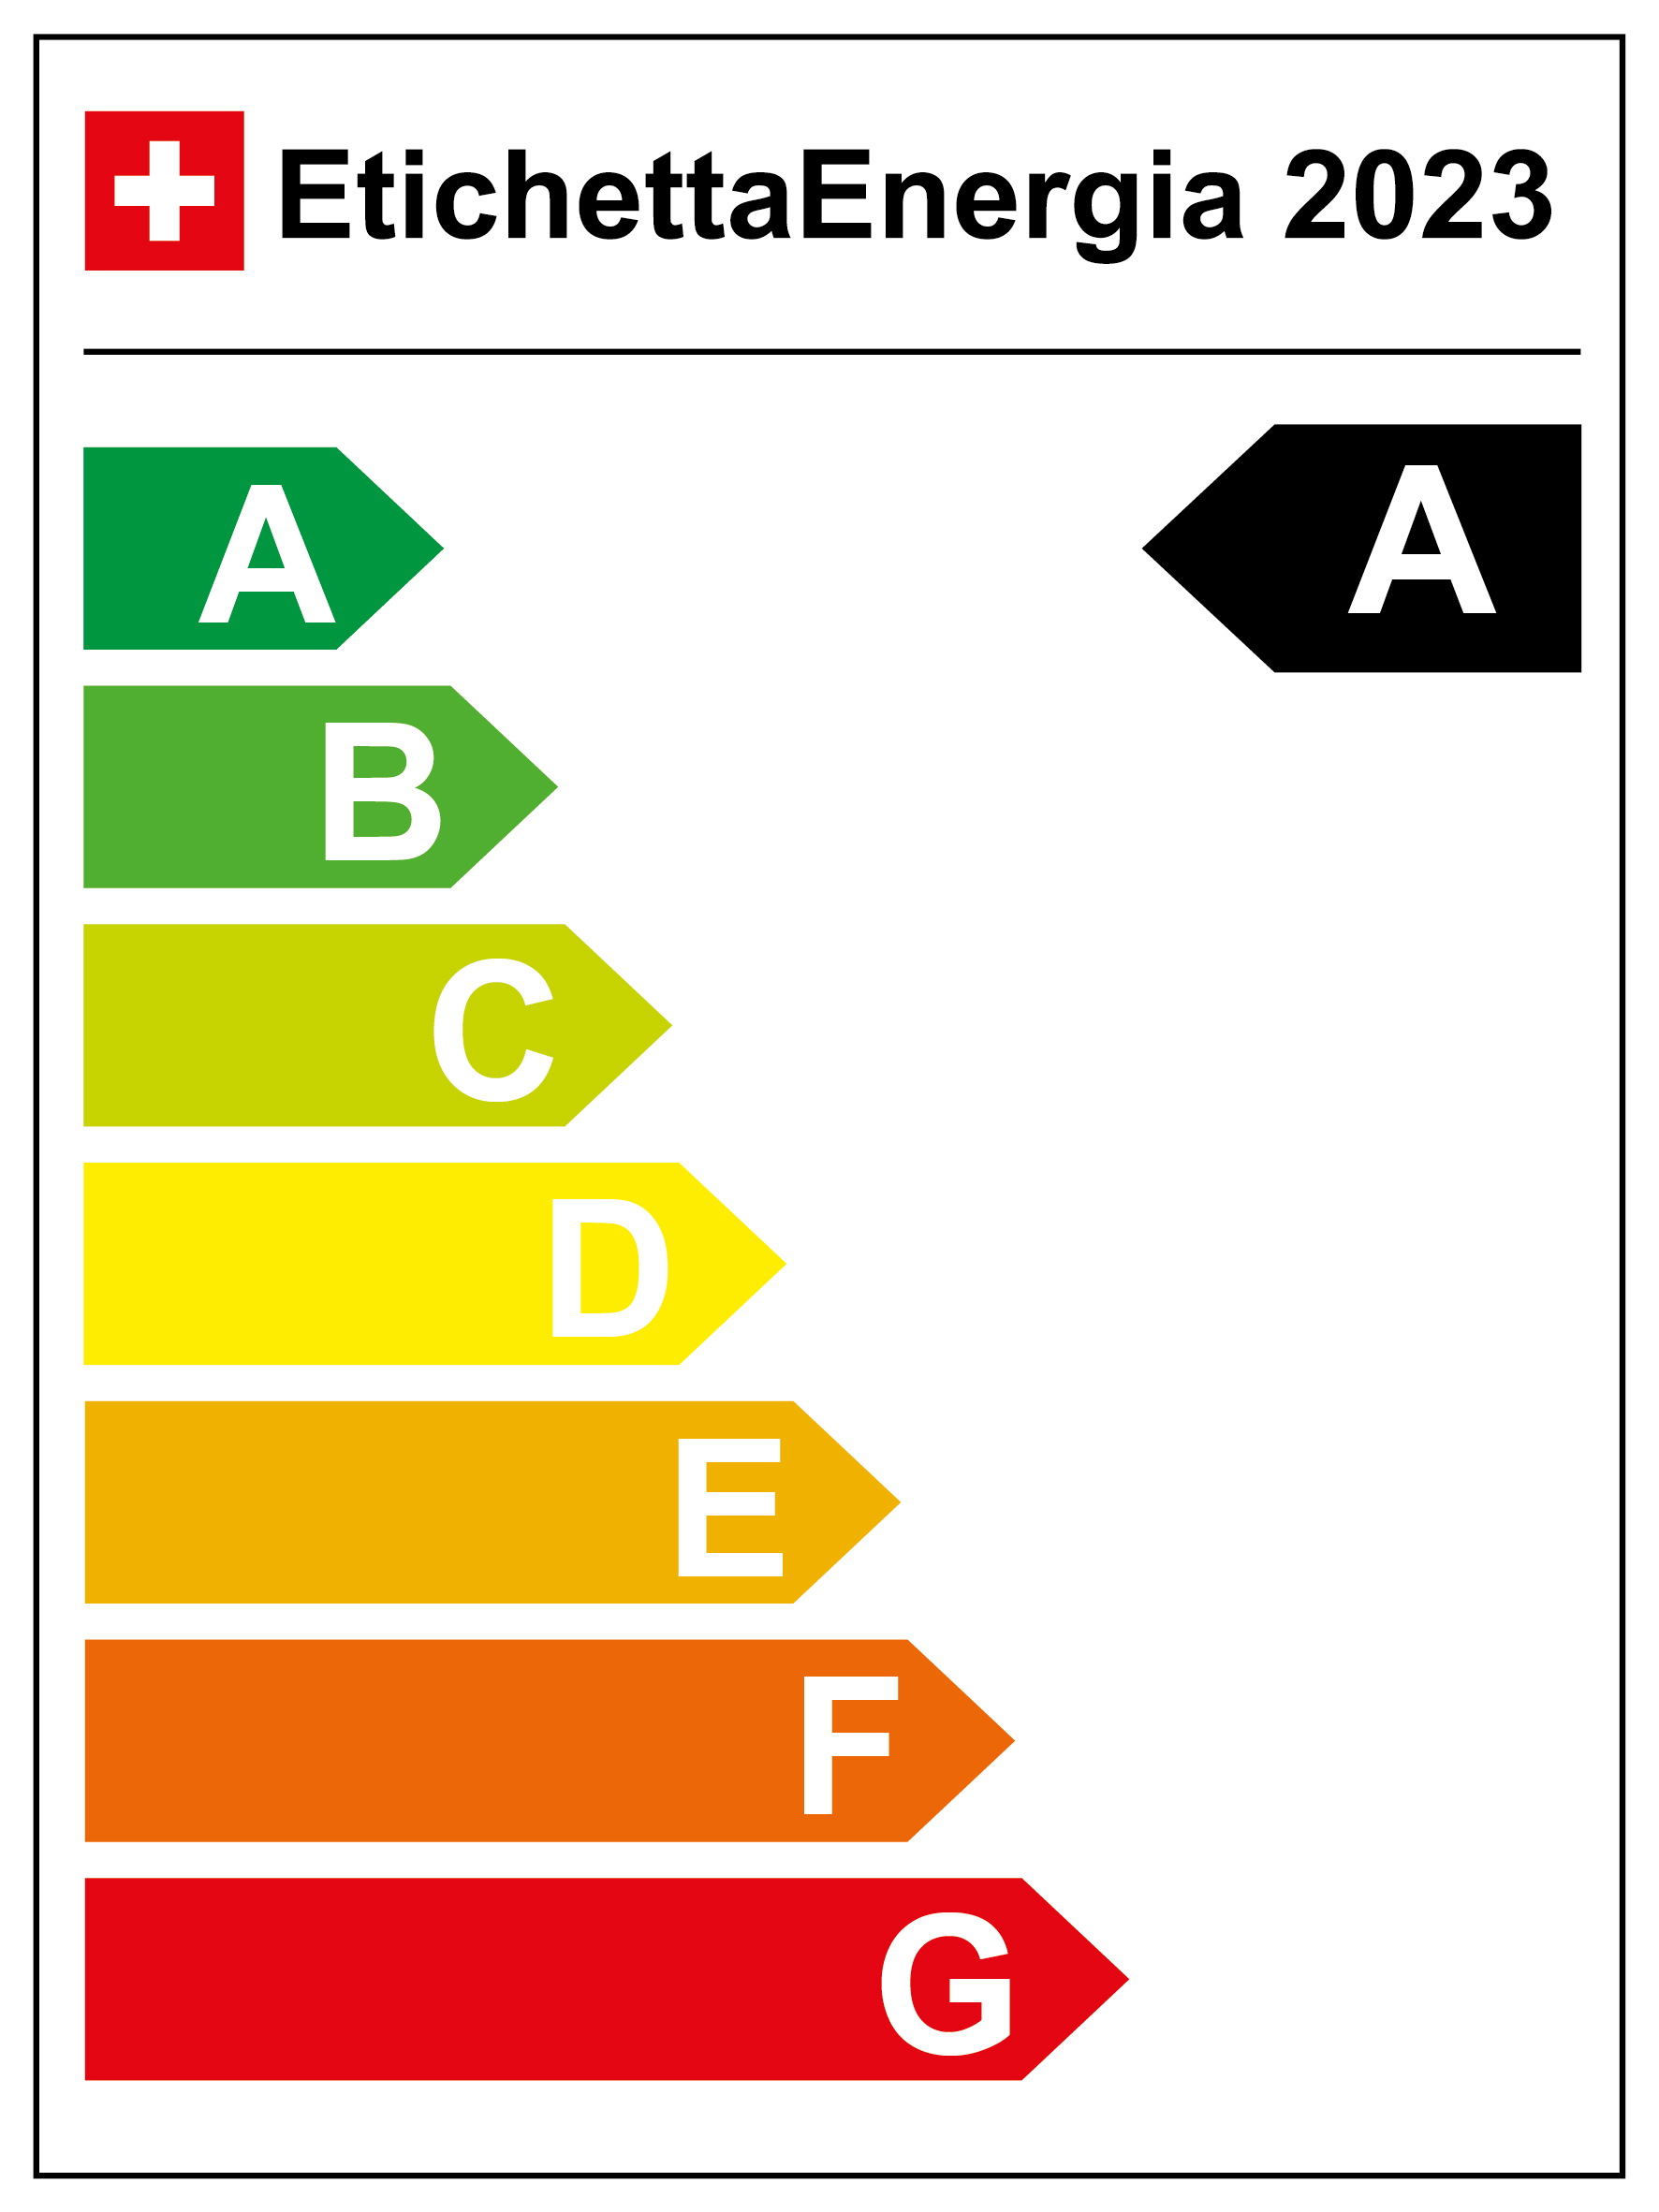 Energieeffizienz-Kategorie: A